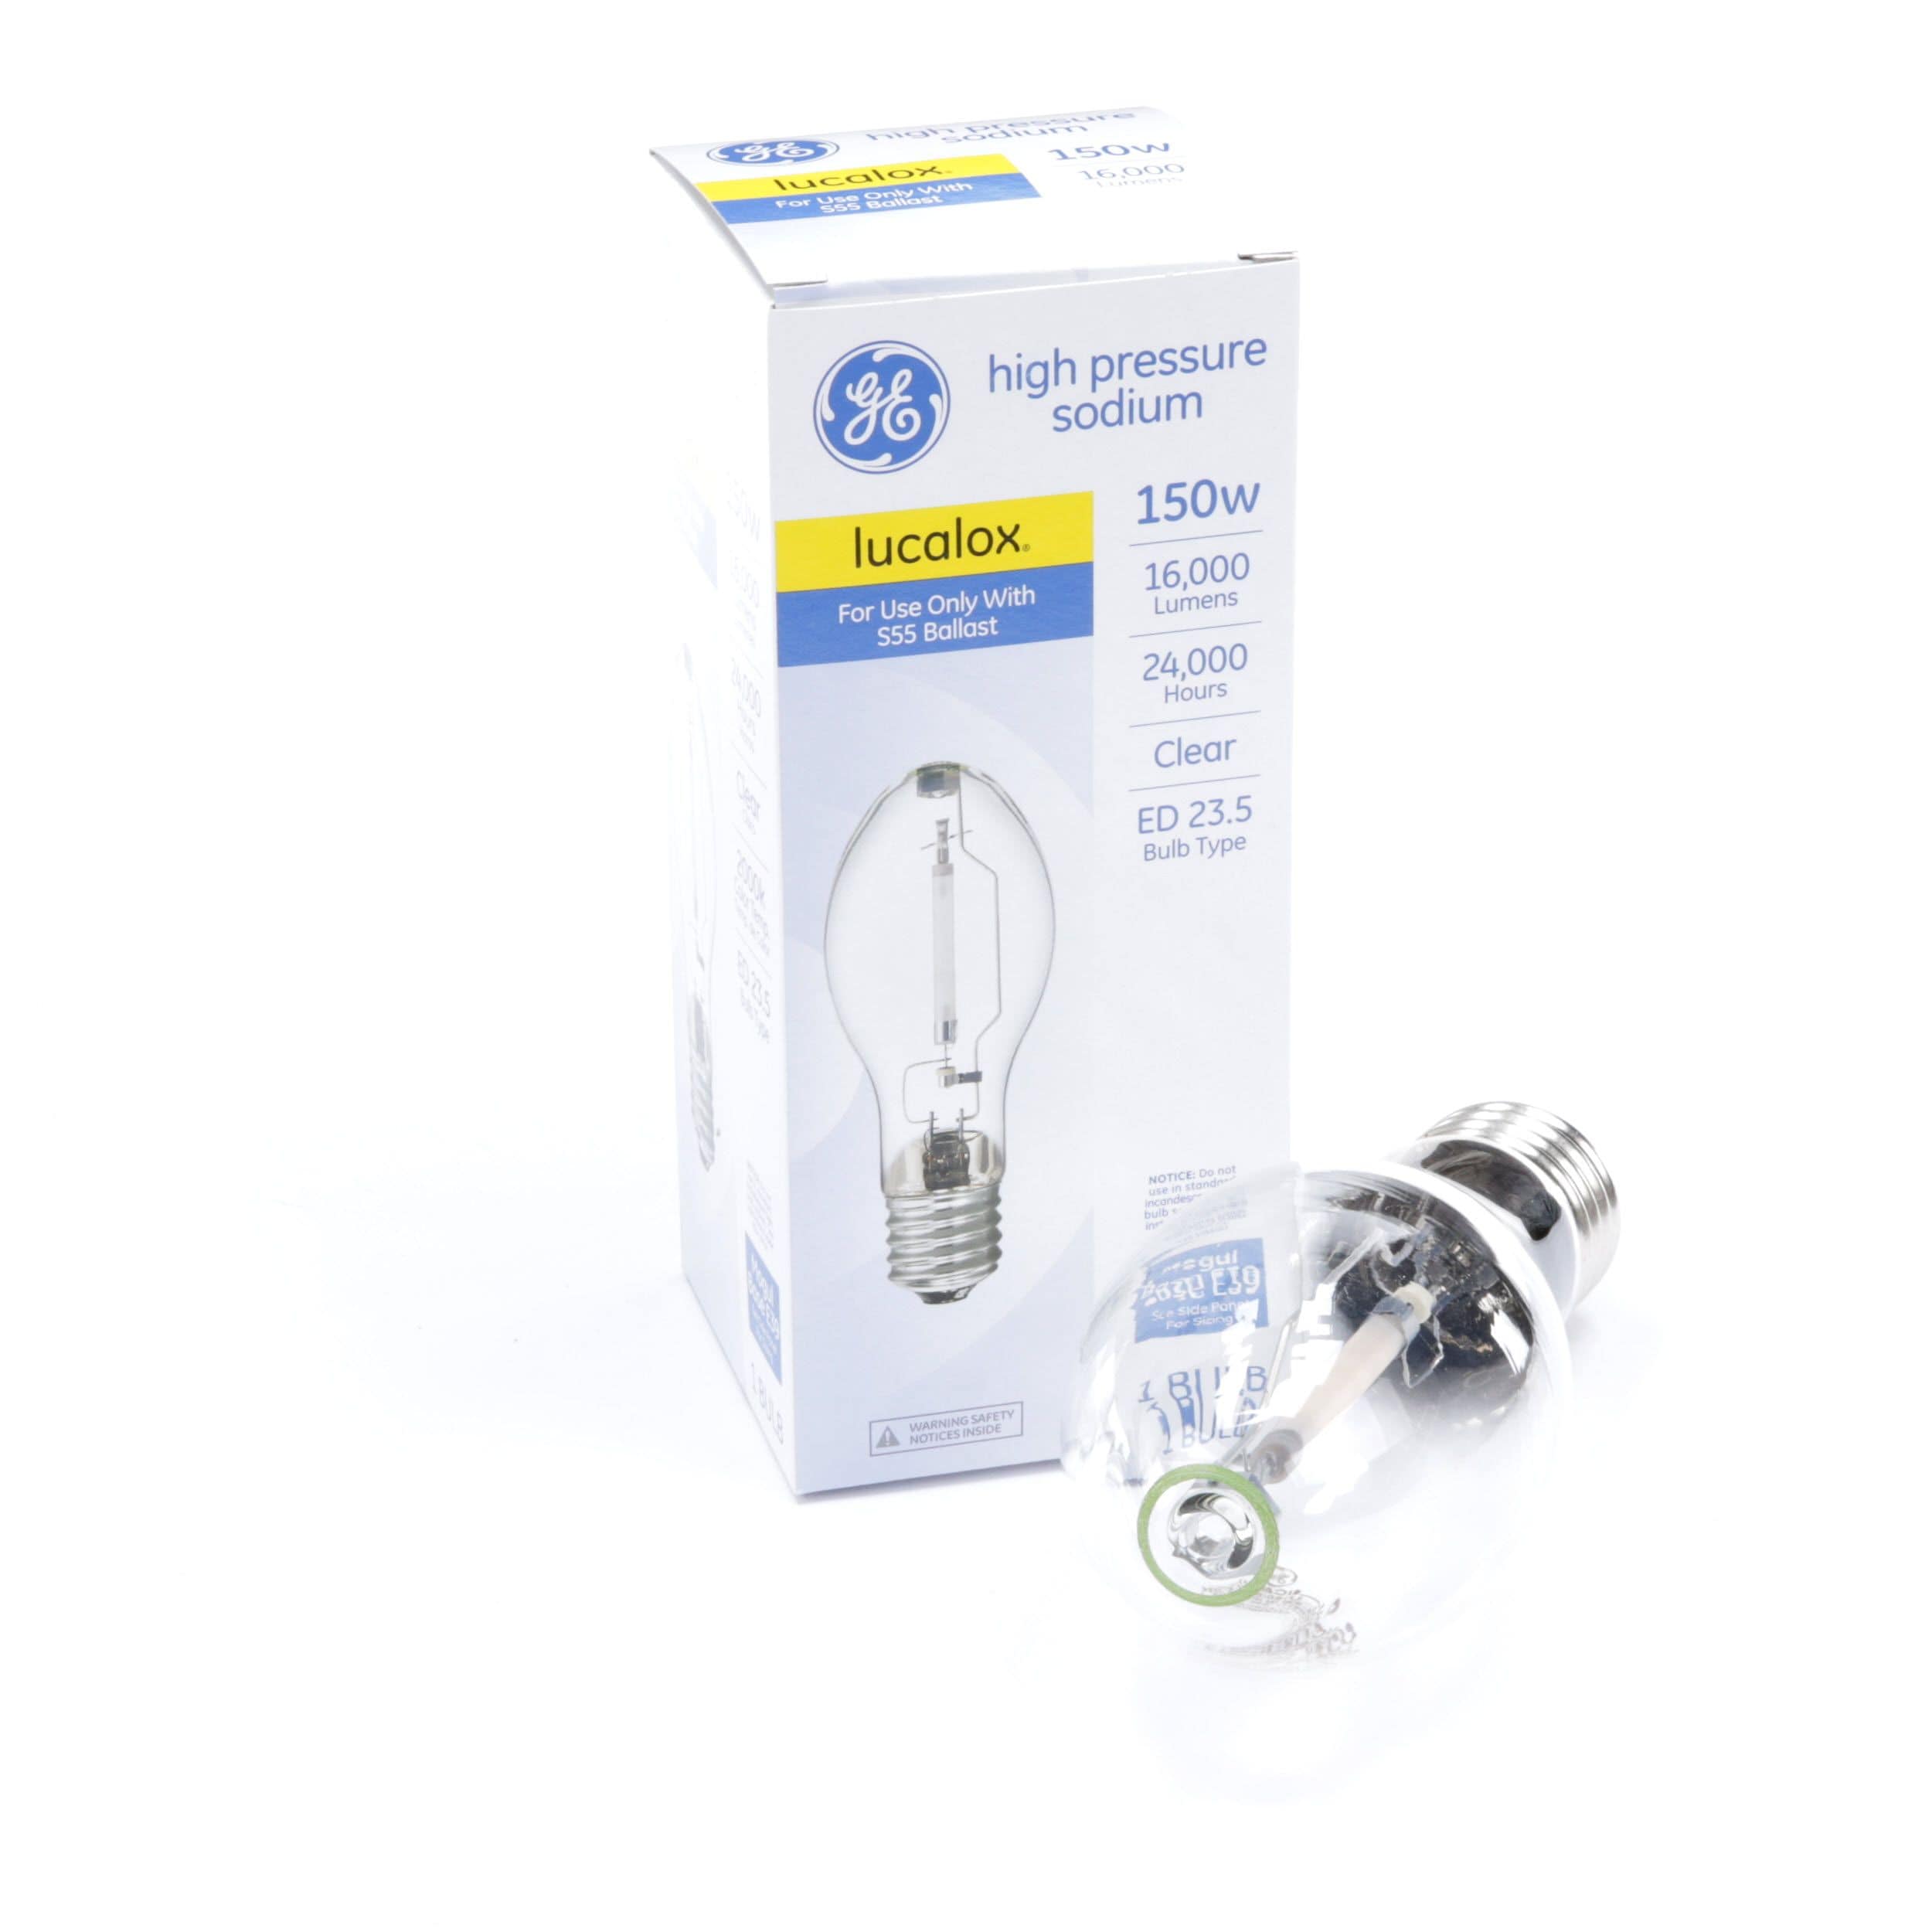 GE High Pressure Sodium 150 Watt Lucalox Lamp Bulb PC:30973 LU150/55/LTP S55 E39 